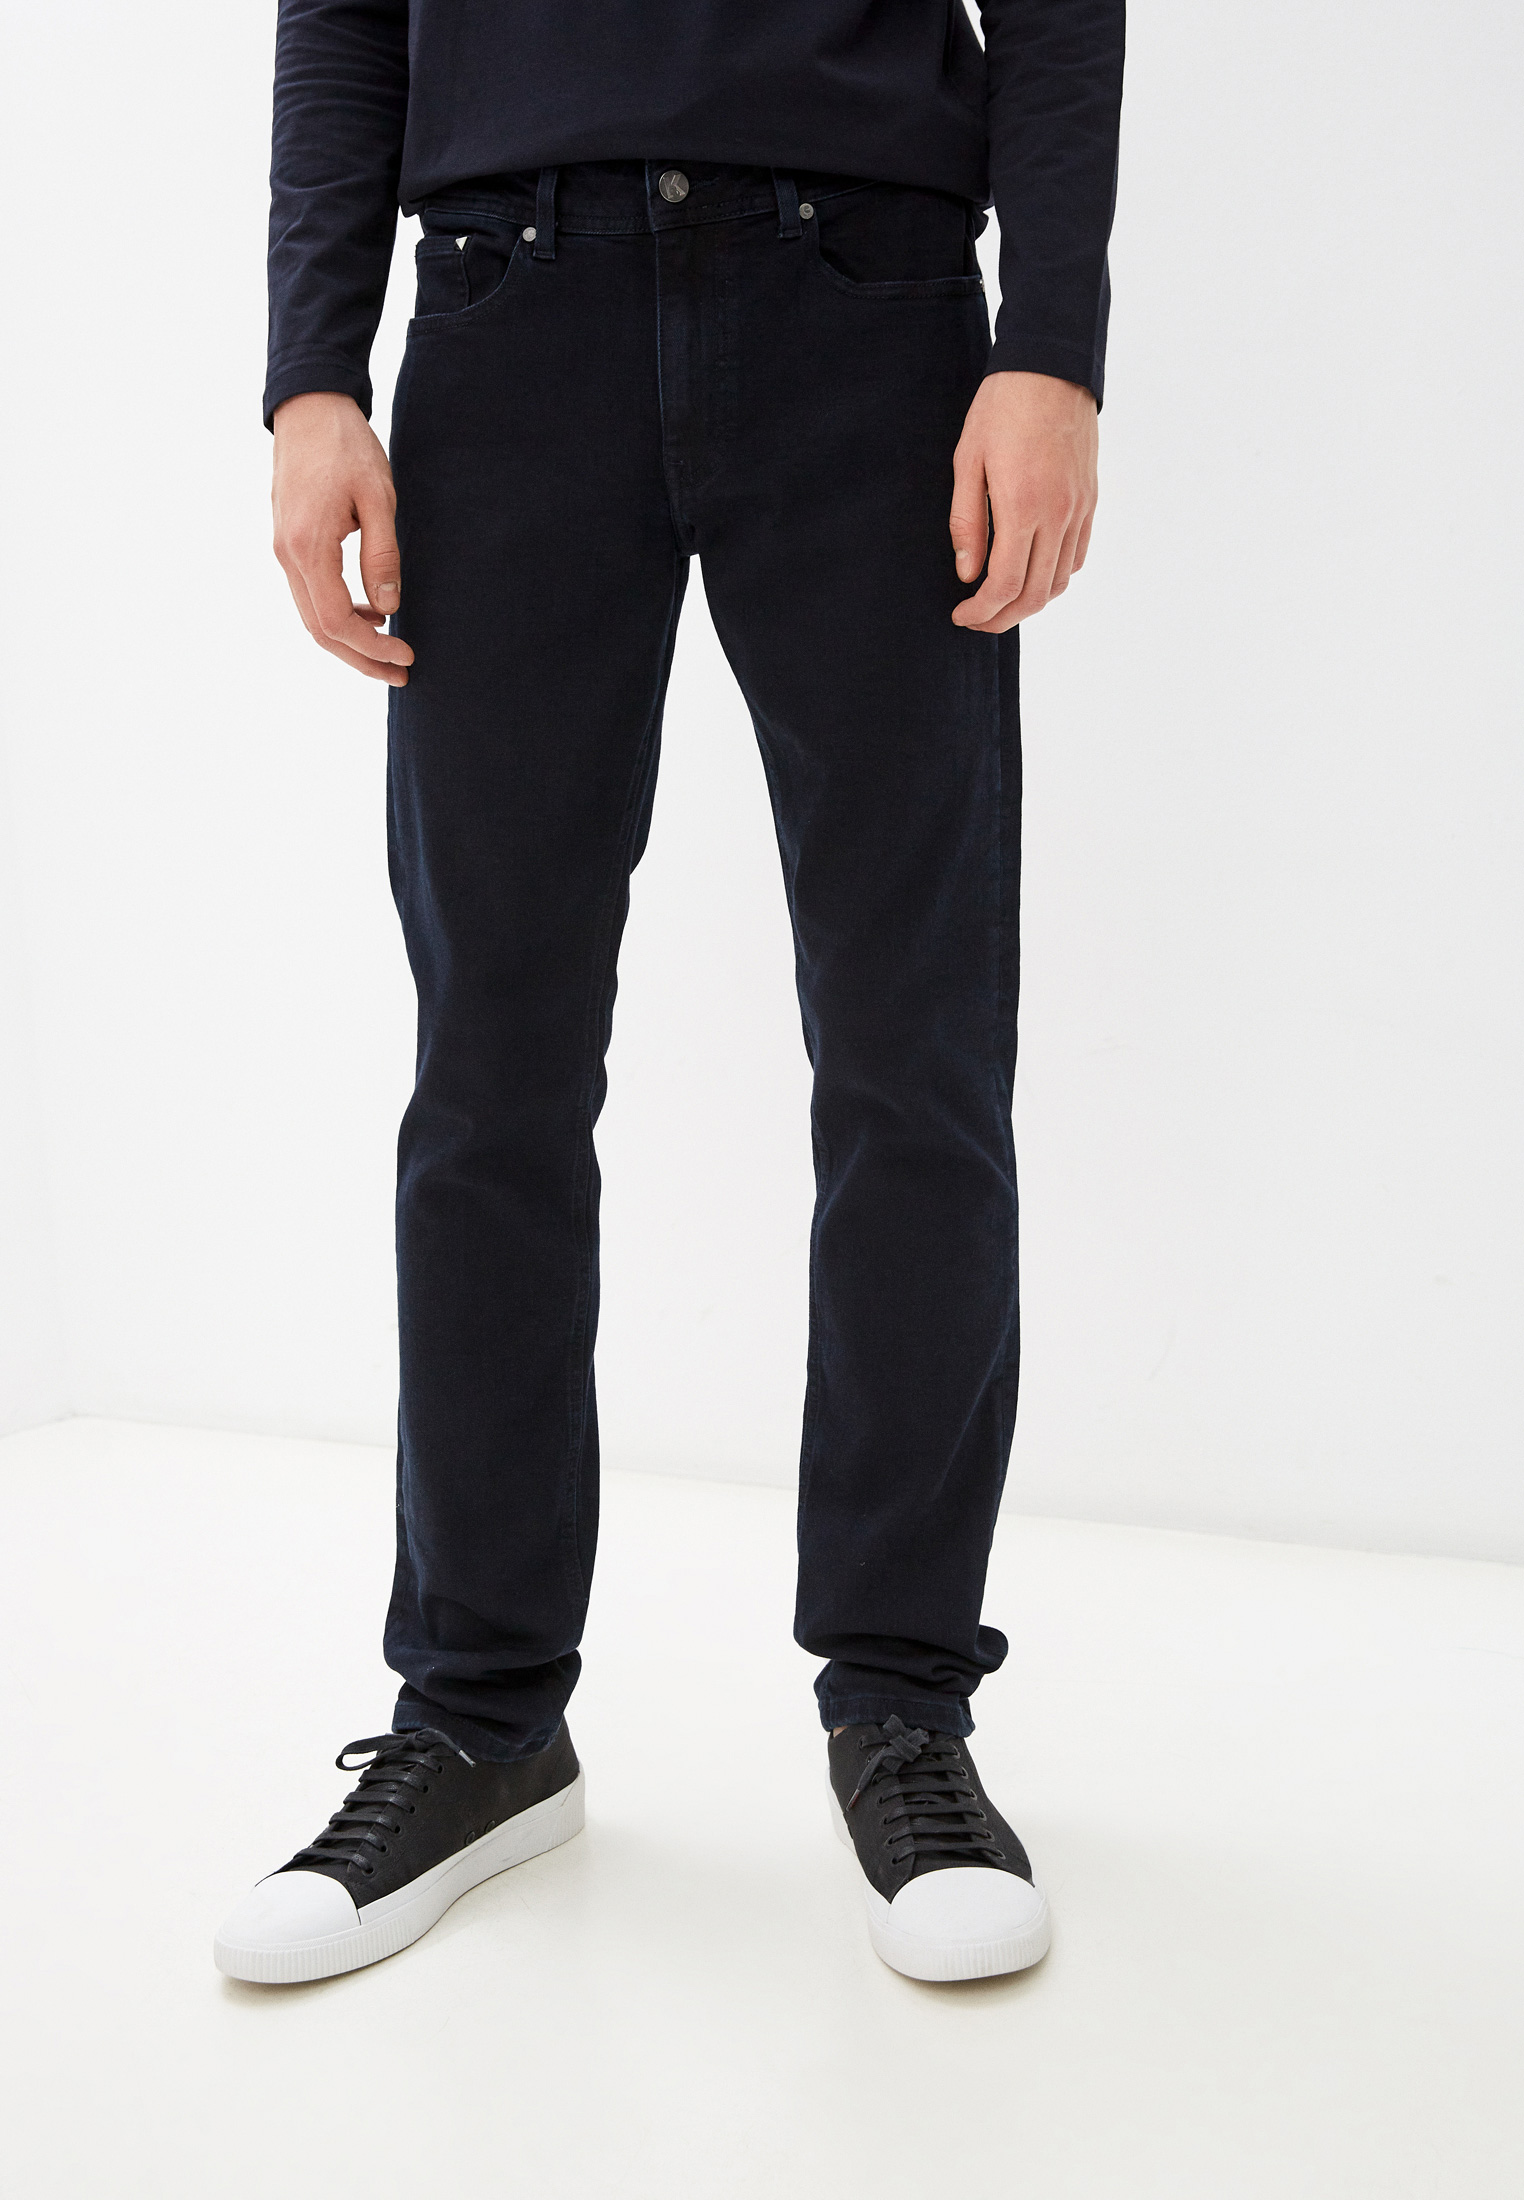 Мужские прямые джинсы Karl Lagerfeld (Карл Лагерфельд) 512830-265840: изображение 1